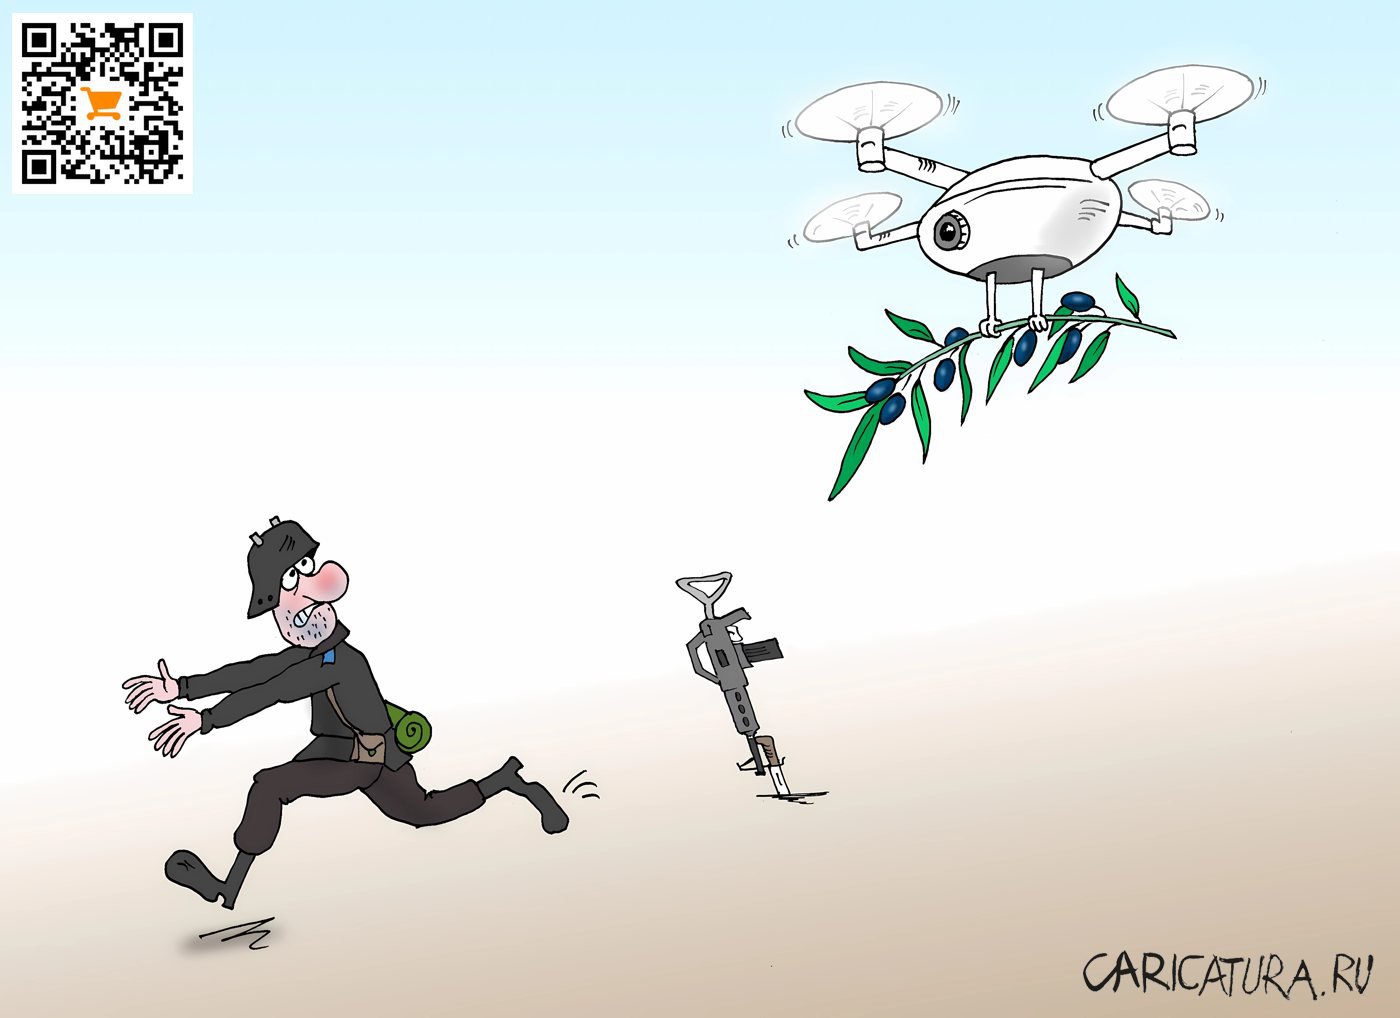 Карикатура "Атака", Валерий Тарасенко